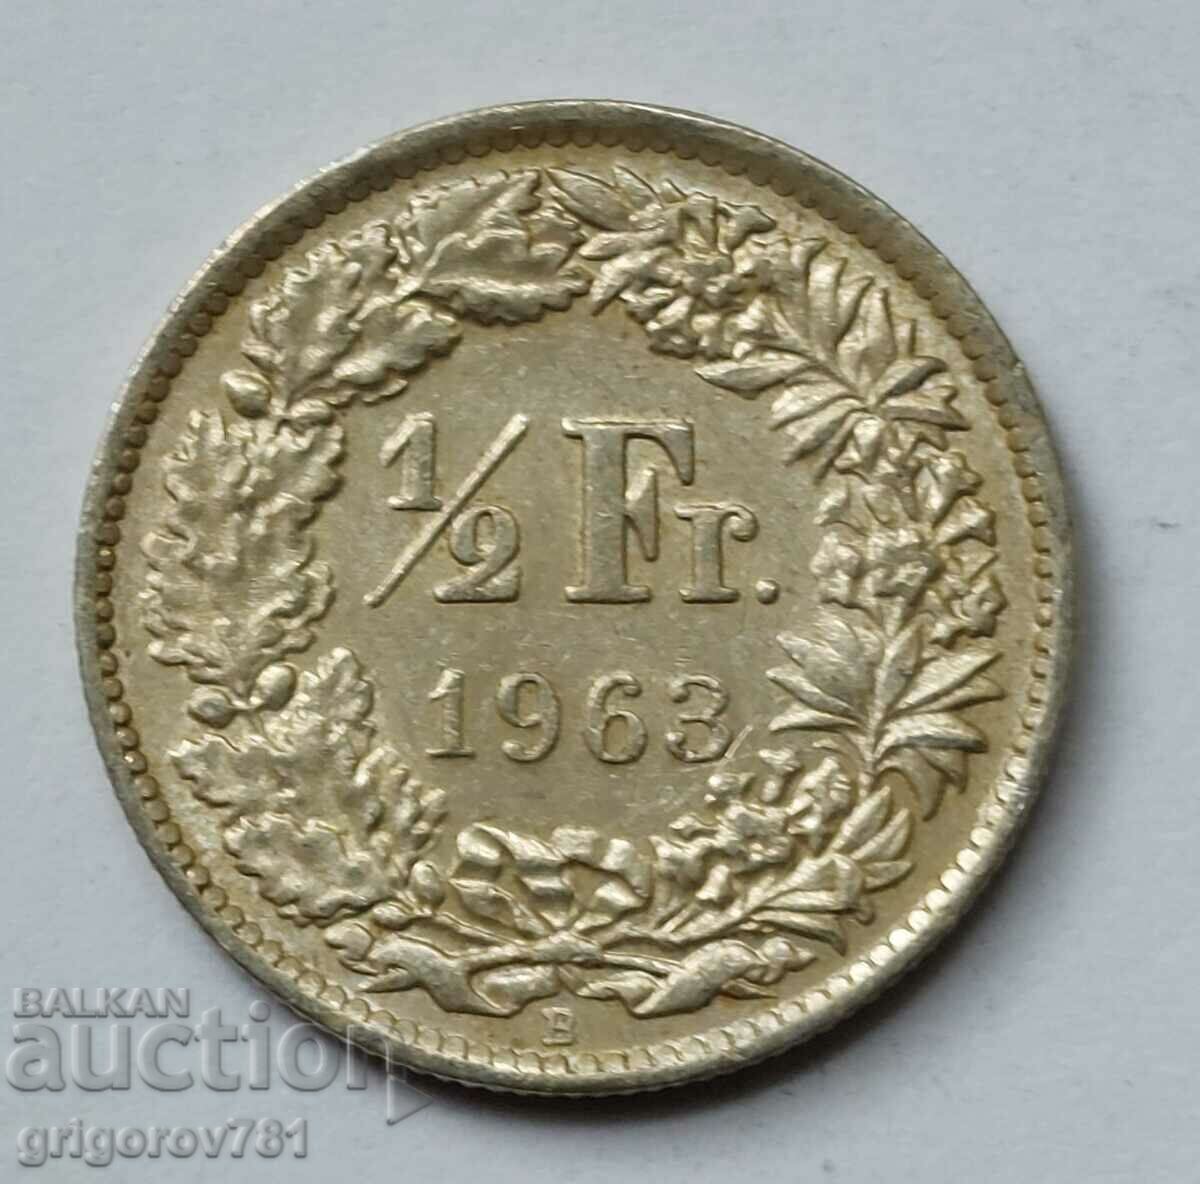 Ασημένιο φράγκο 1/2 Ελβετία 1963 Β - Ασημένιο νόμισμα #42